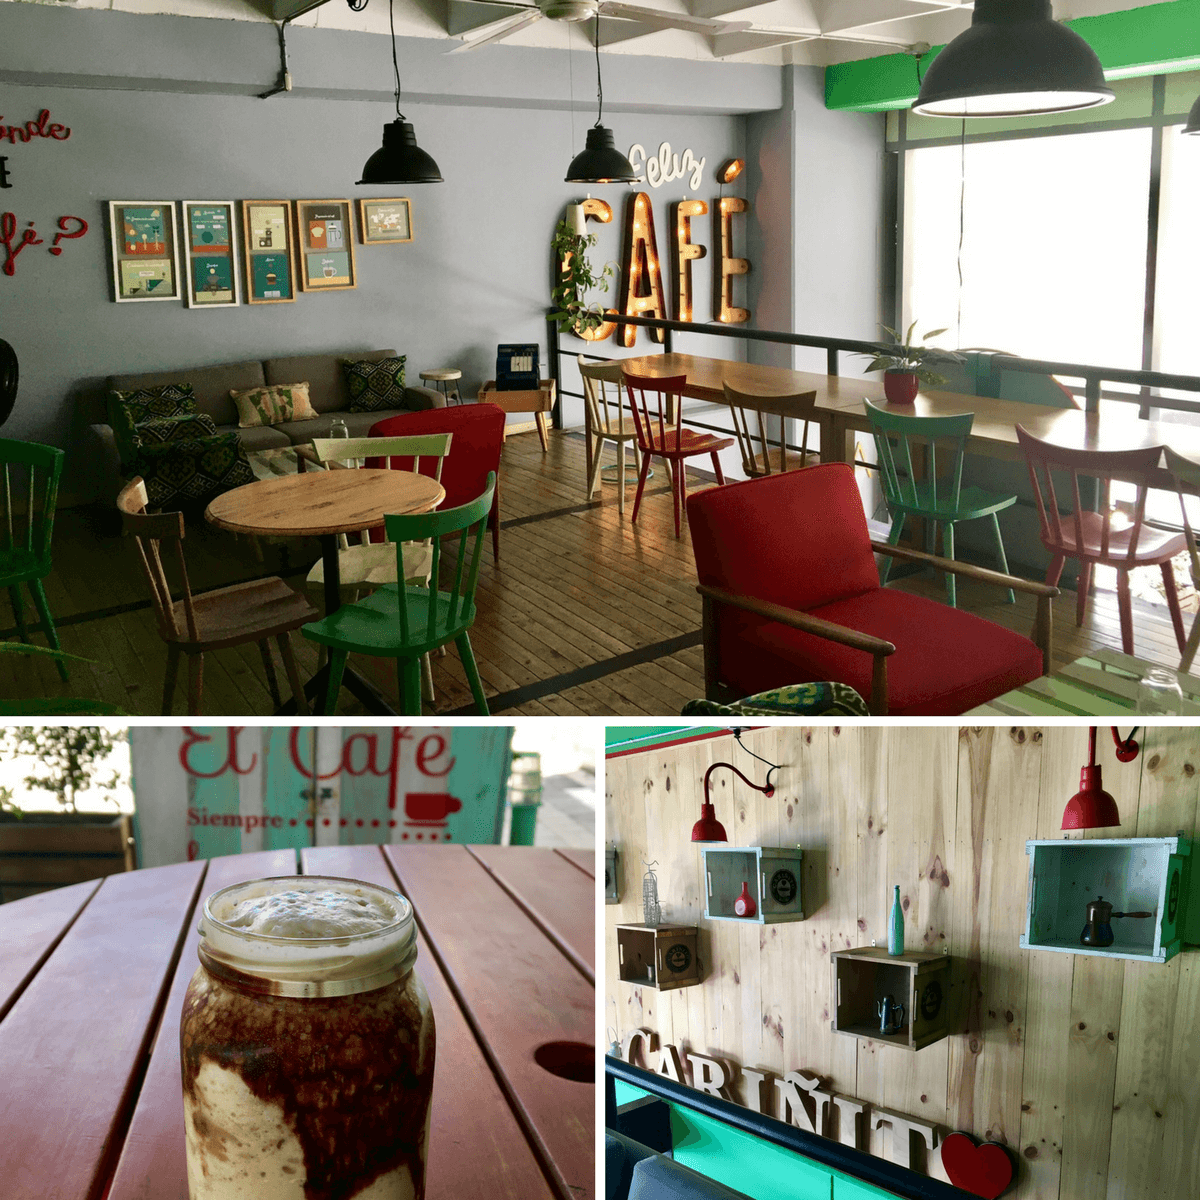 El Cariñito Cafe in Medellin, Columbia